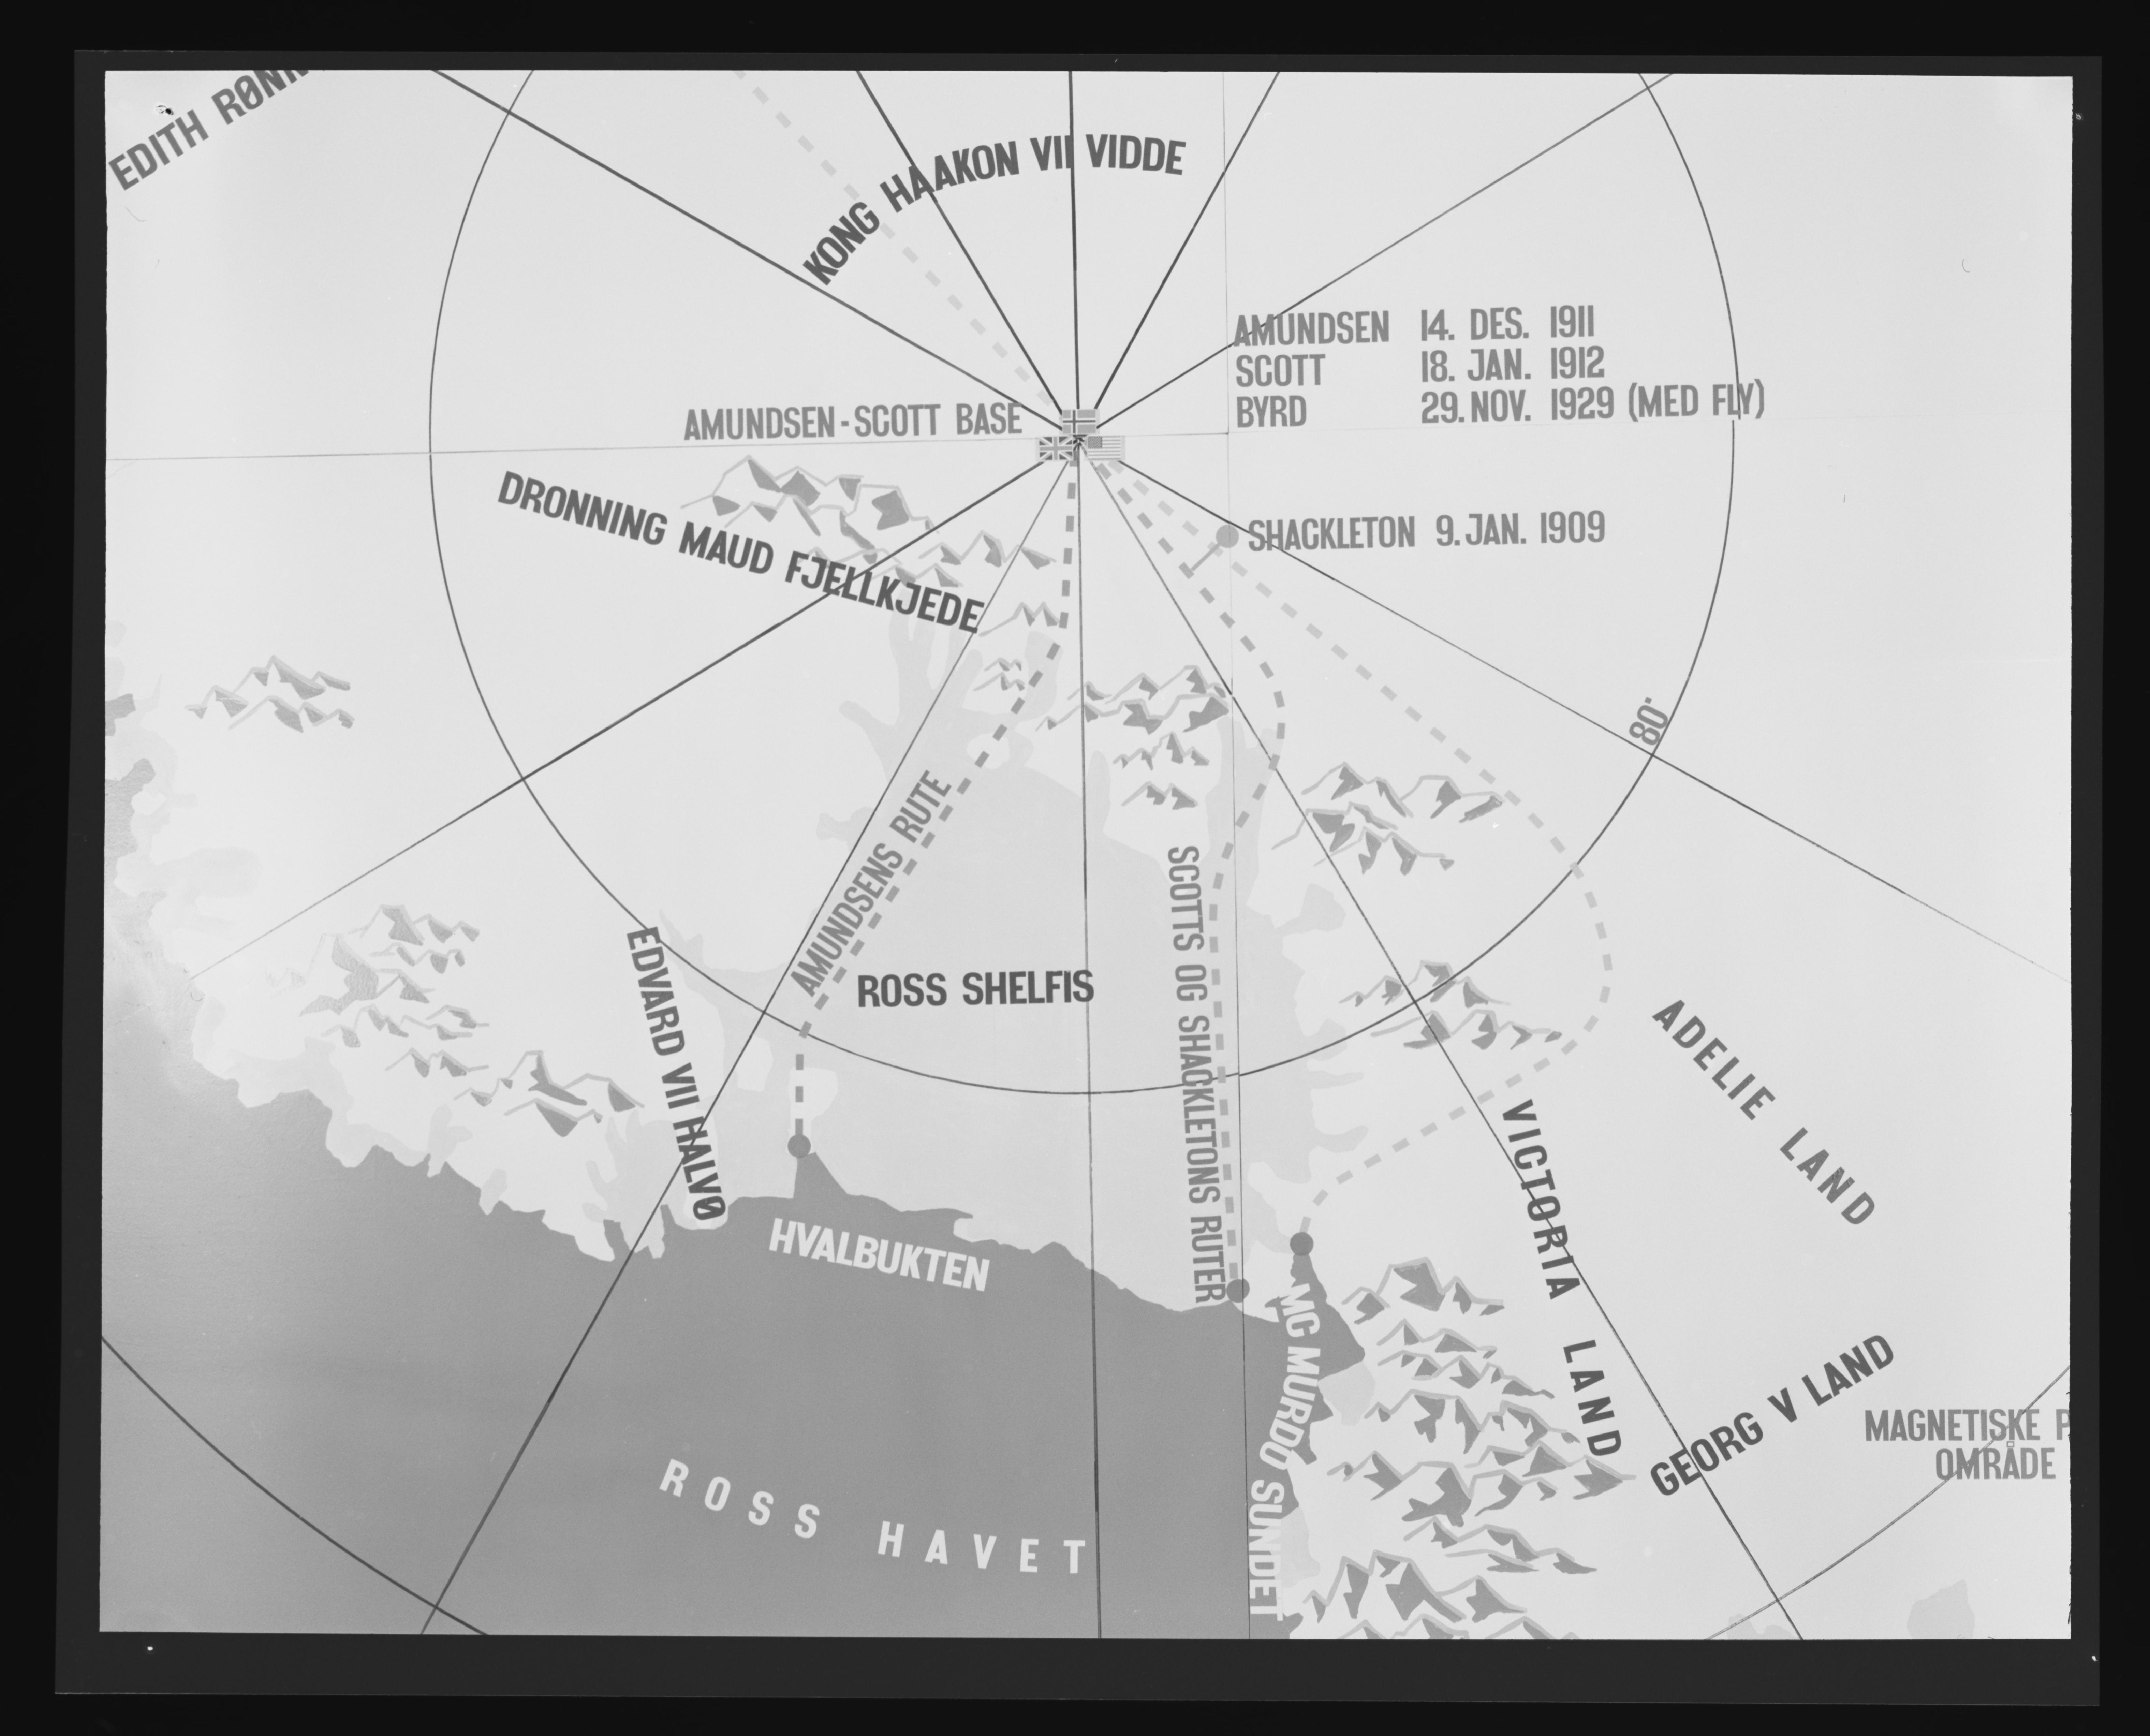 kart sydpolen File Kart Over Sydpolen No Nb Digifoto 20160304 00017 Nb Mit Fnr 27040 Jpg Wikimedia Commons kart sydpolen